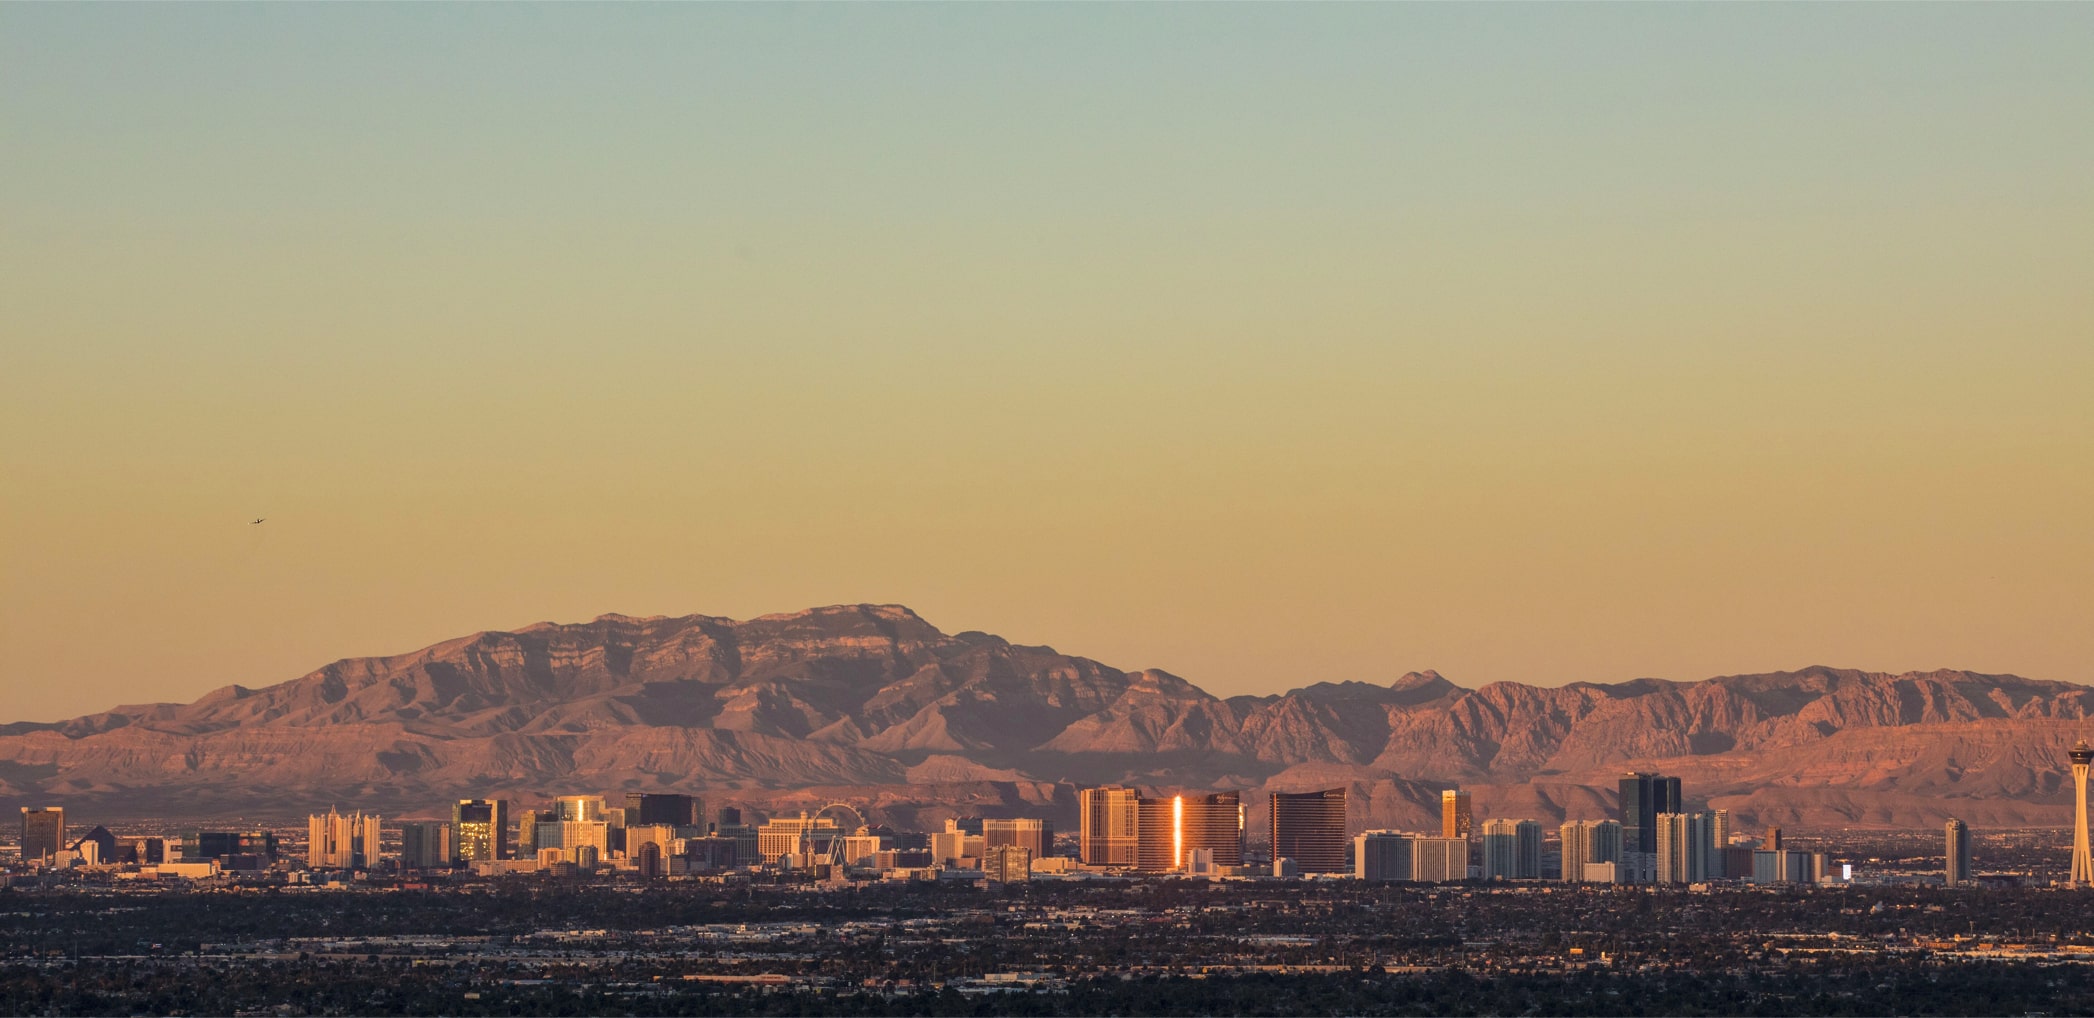 Landscape shot of Las Vegas City